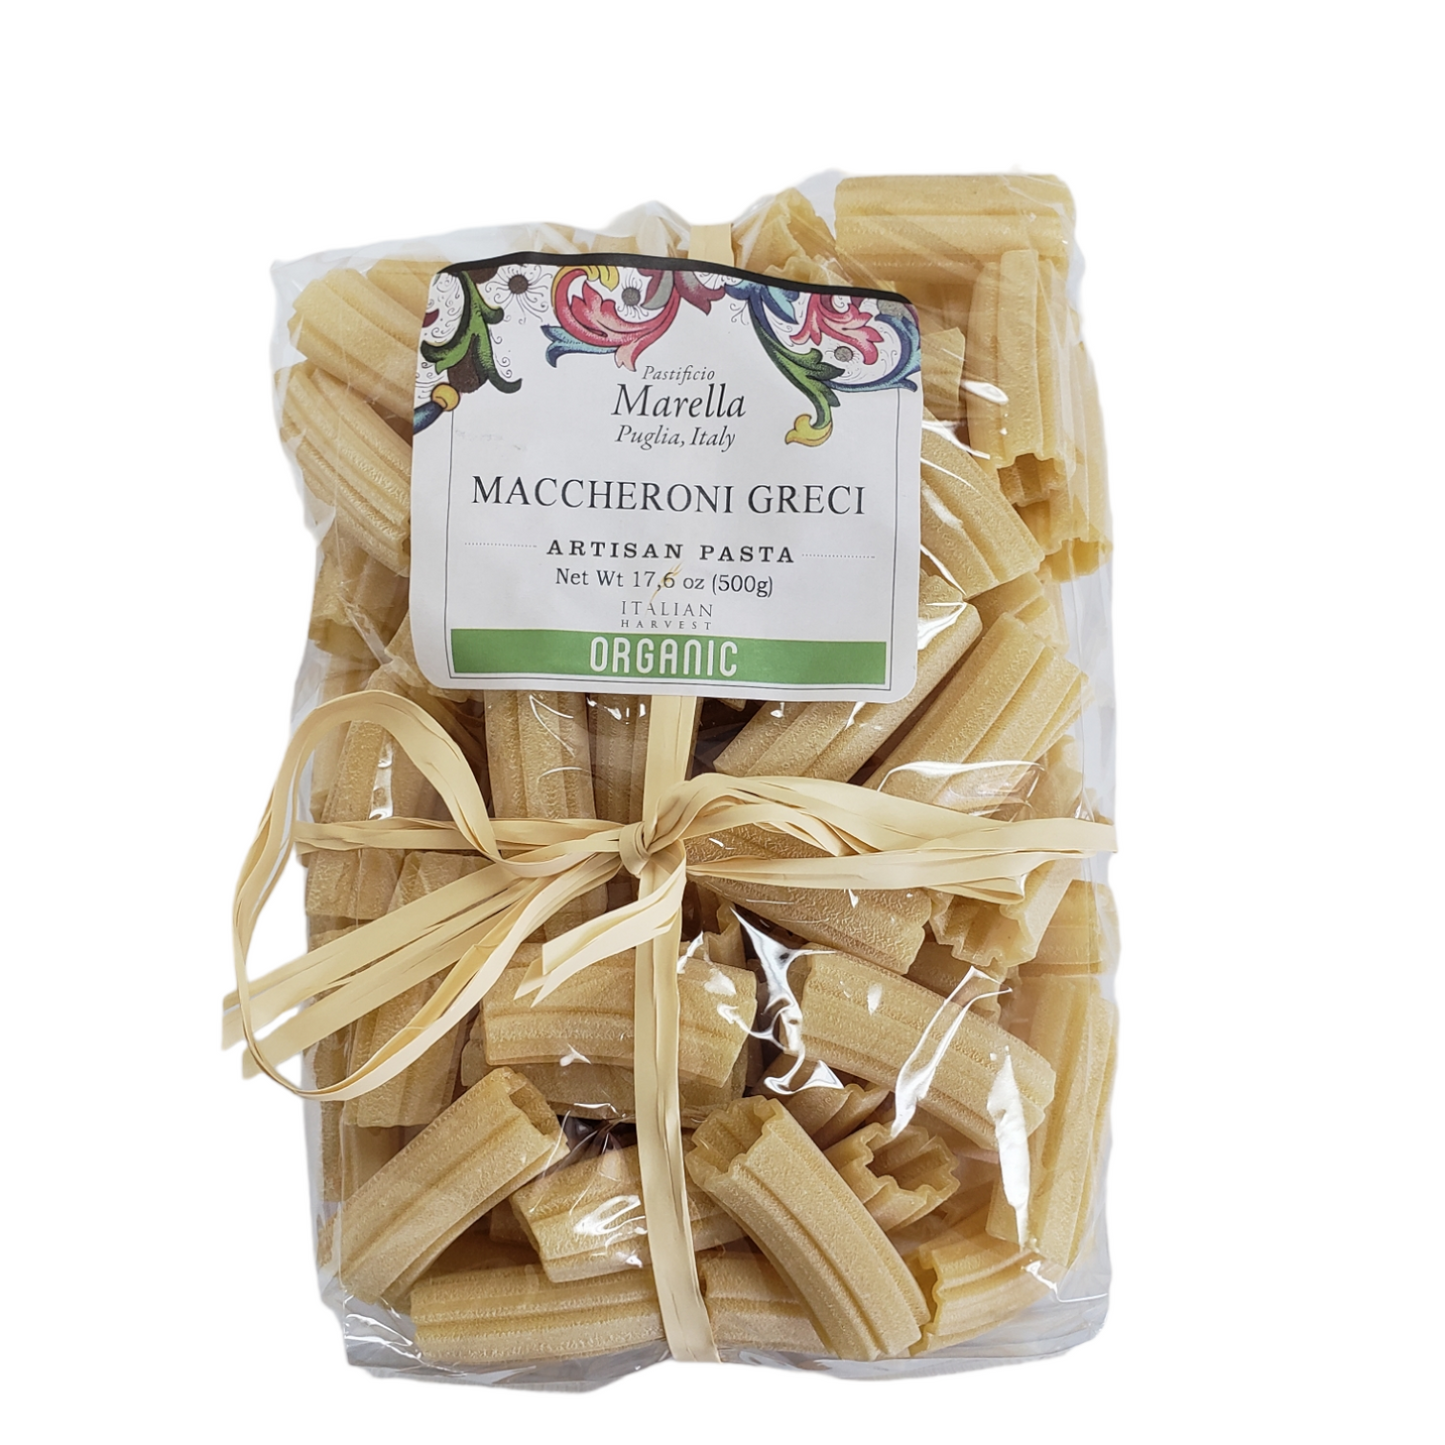 Maccheroni Greci,  Organic, 1.1 lb, 12/CS